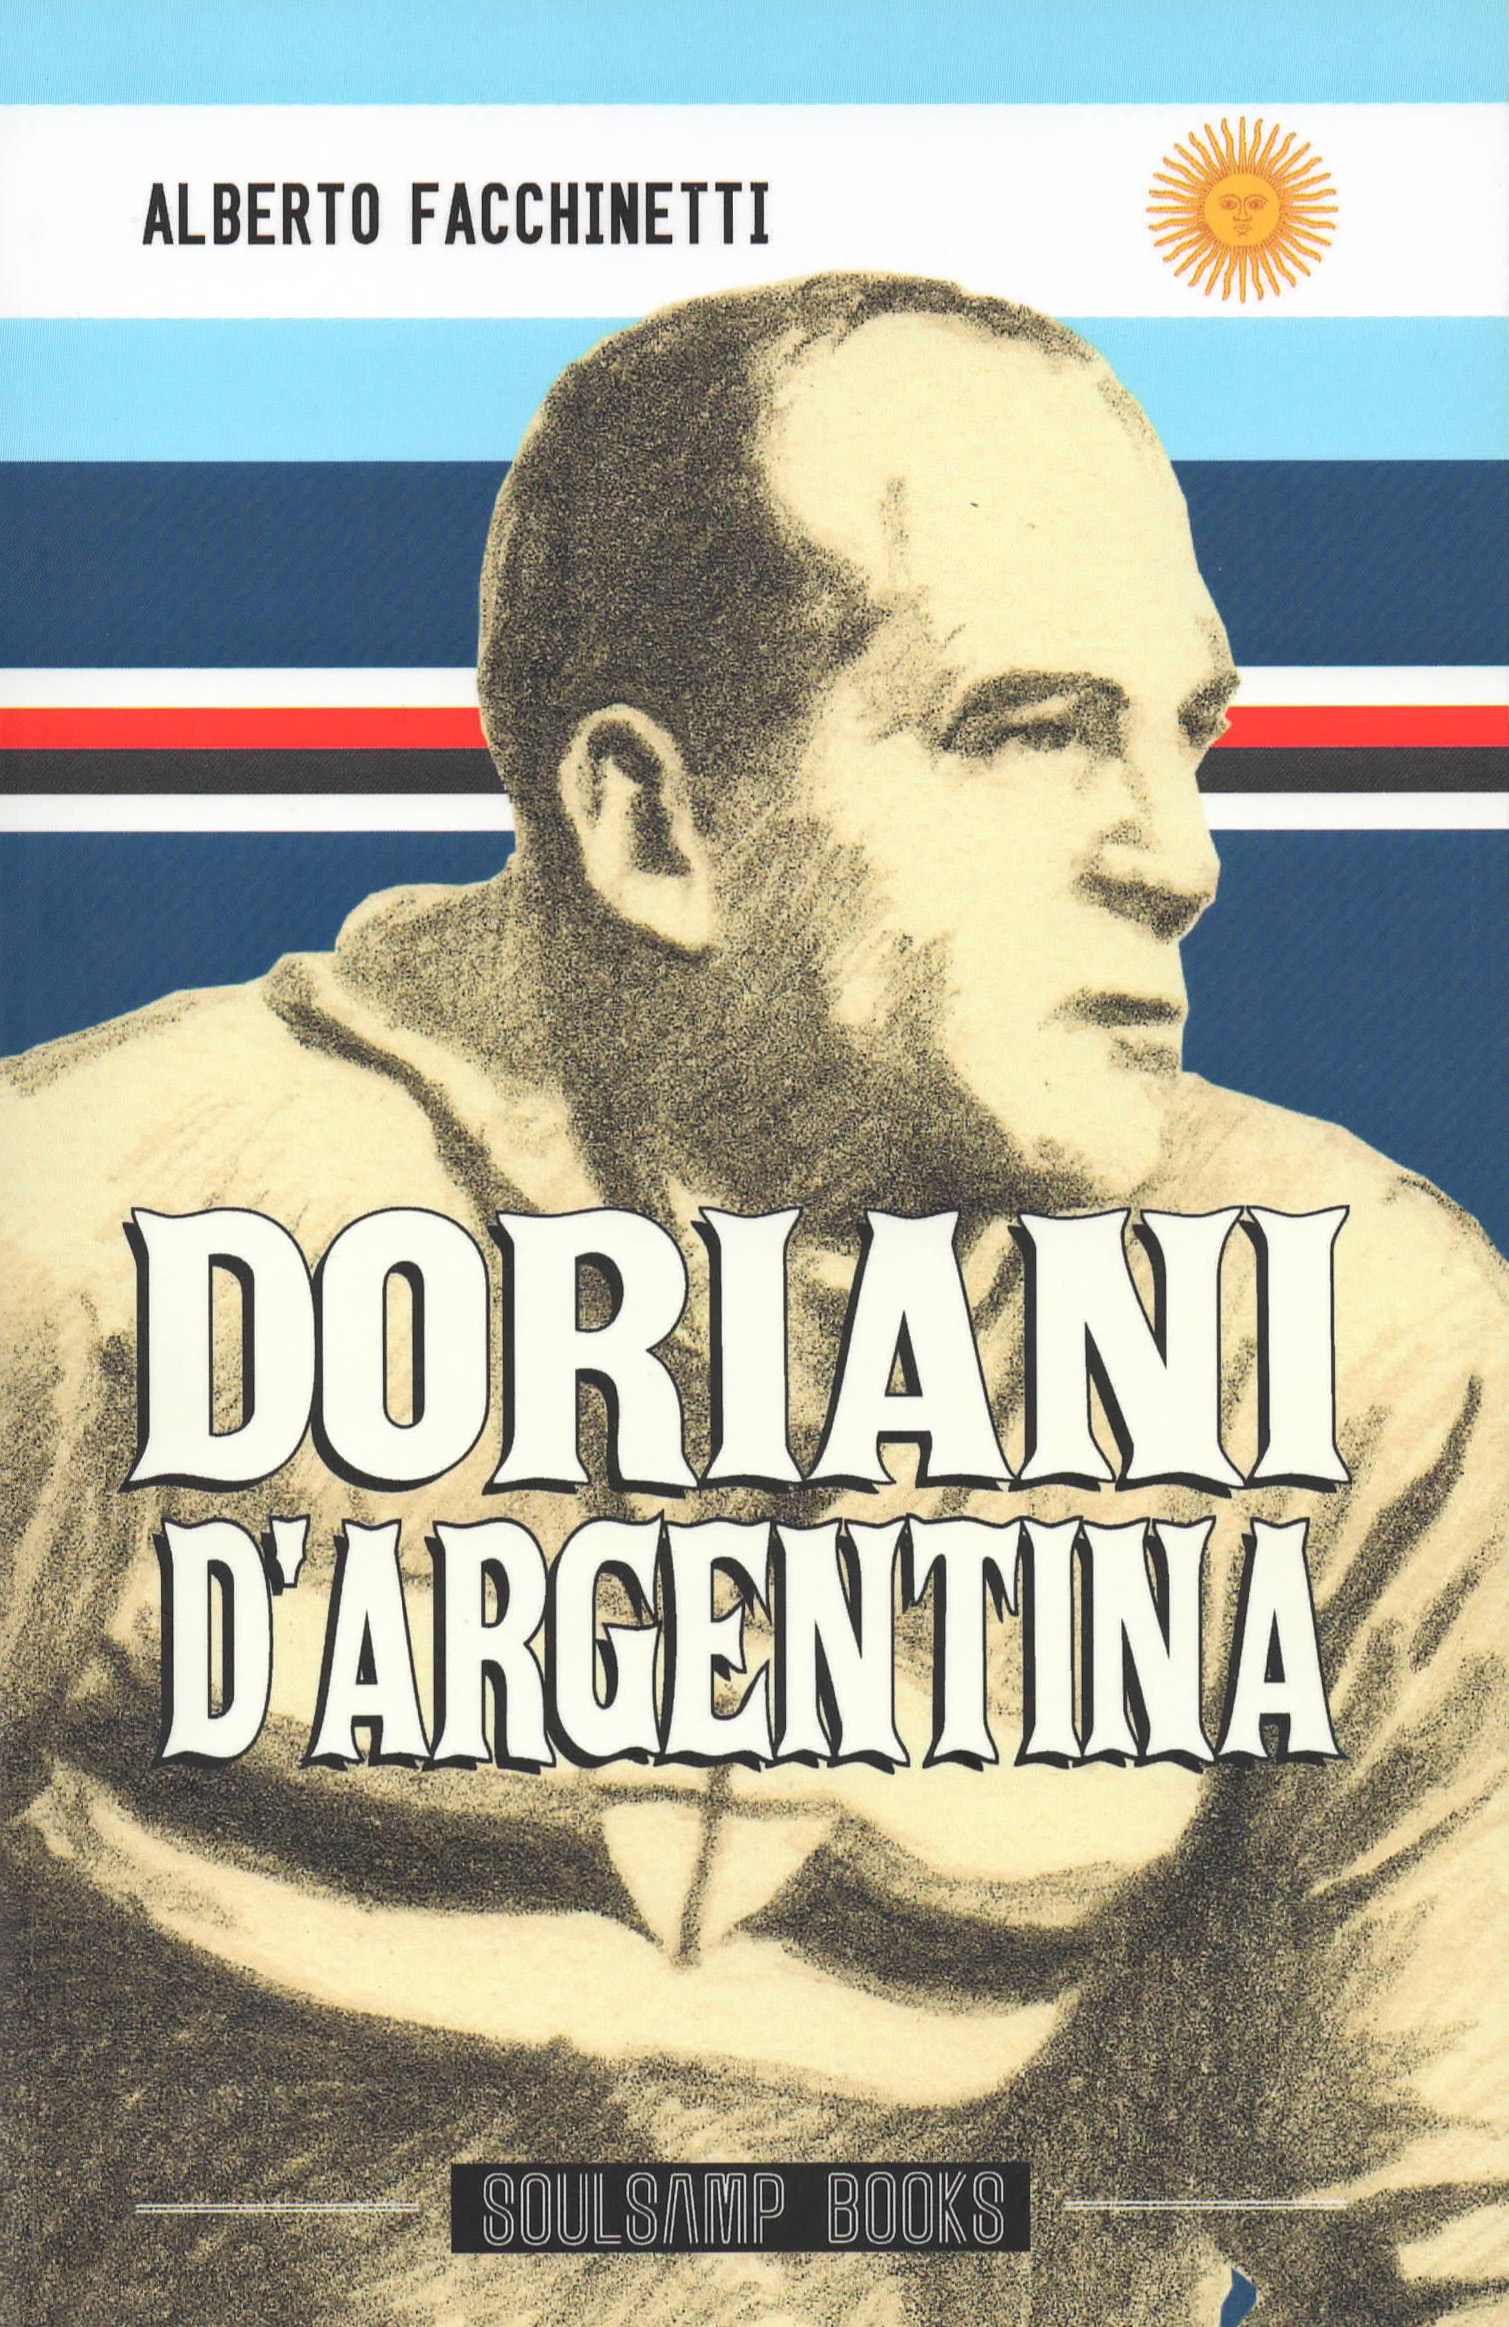 2013 - Copertina del libro 'Doriani d'Argentina', di Alberto Facchinetti, SoulSamp Book